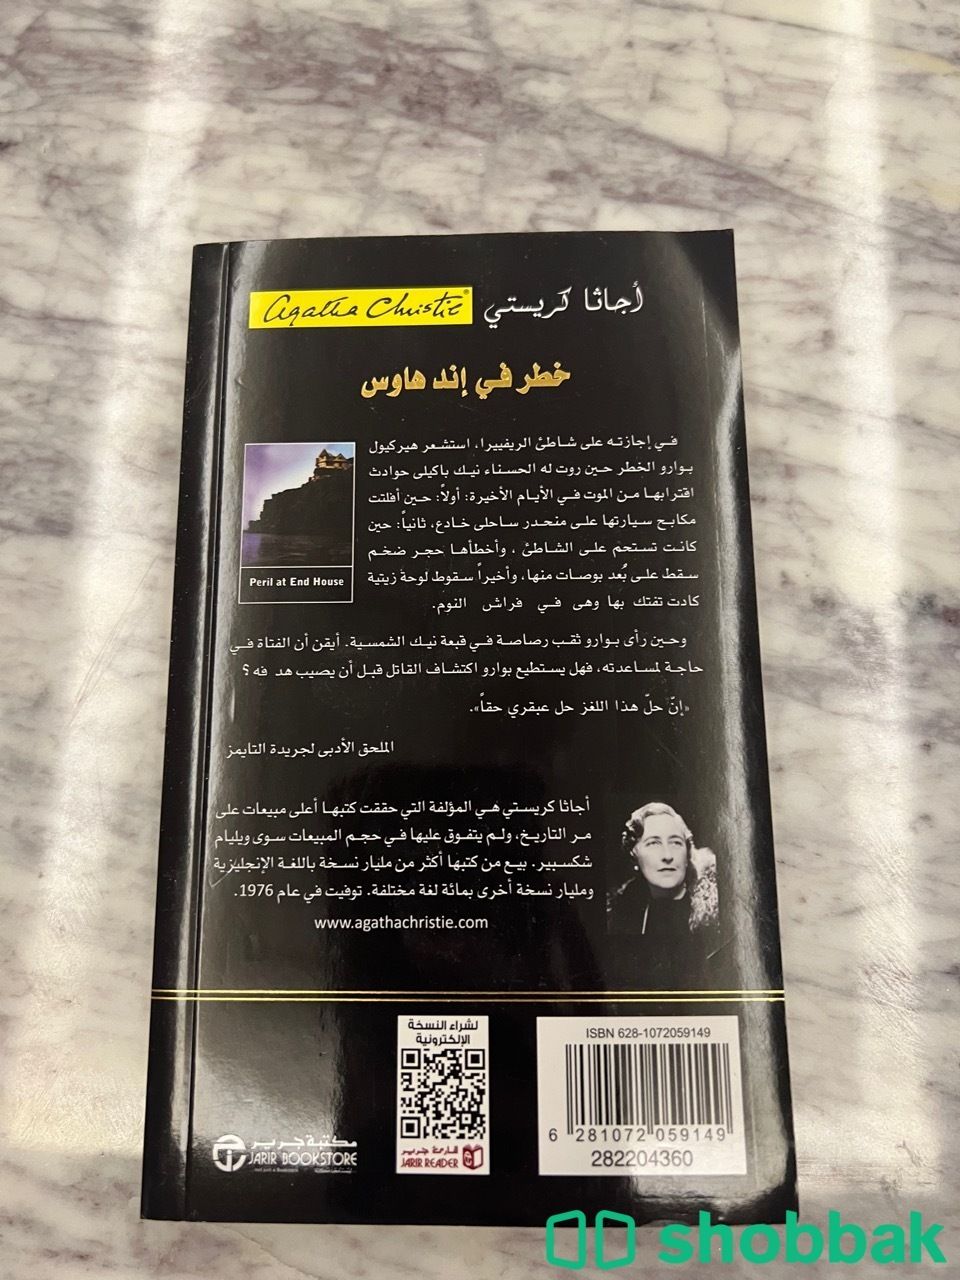 كتب للبيع Shobbak Saudi Arabia